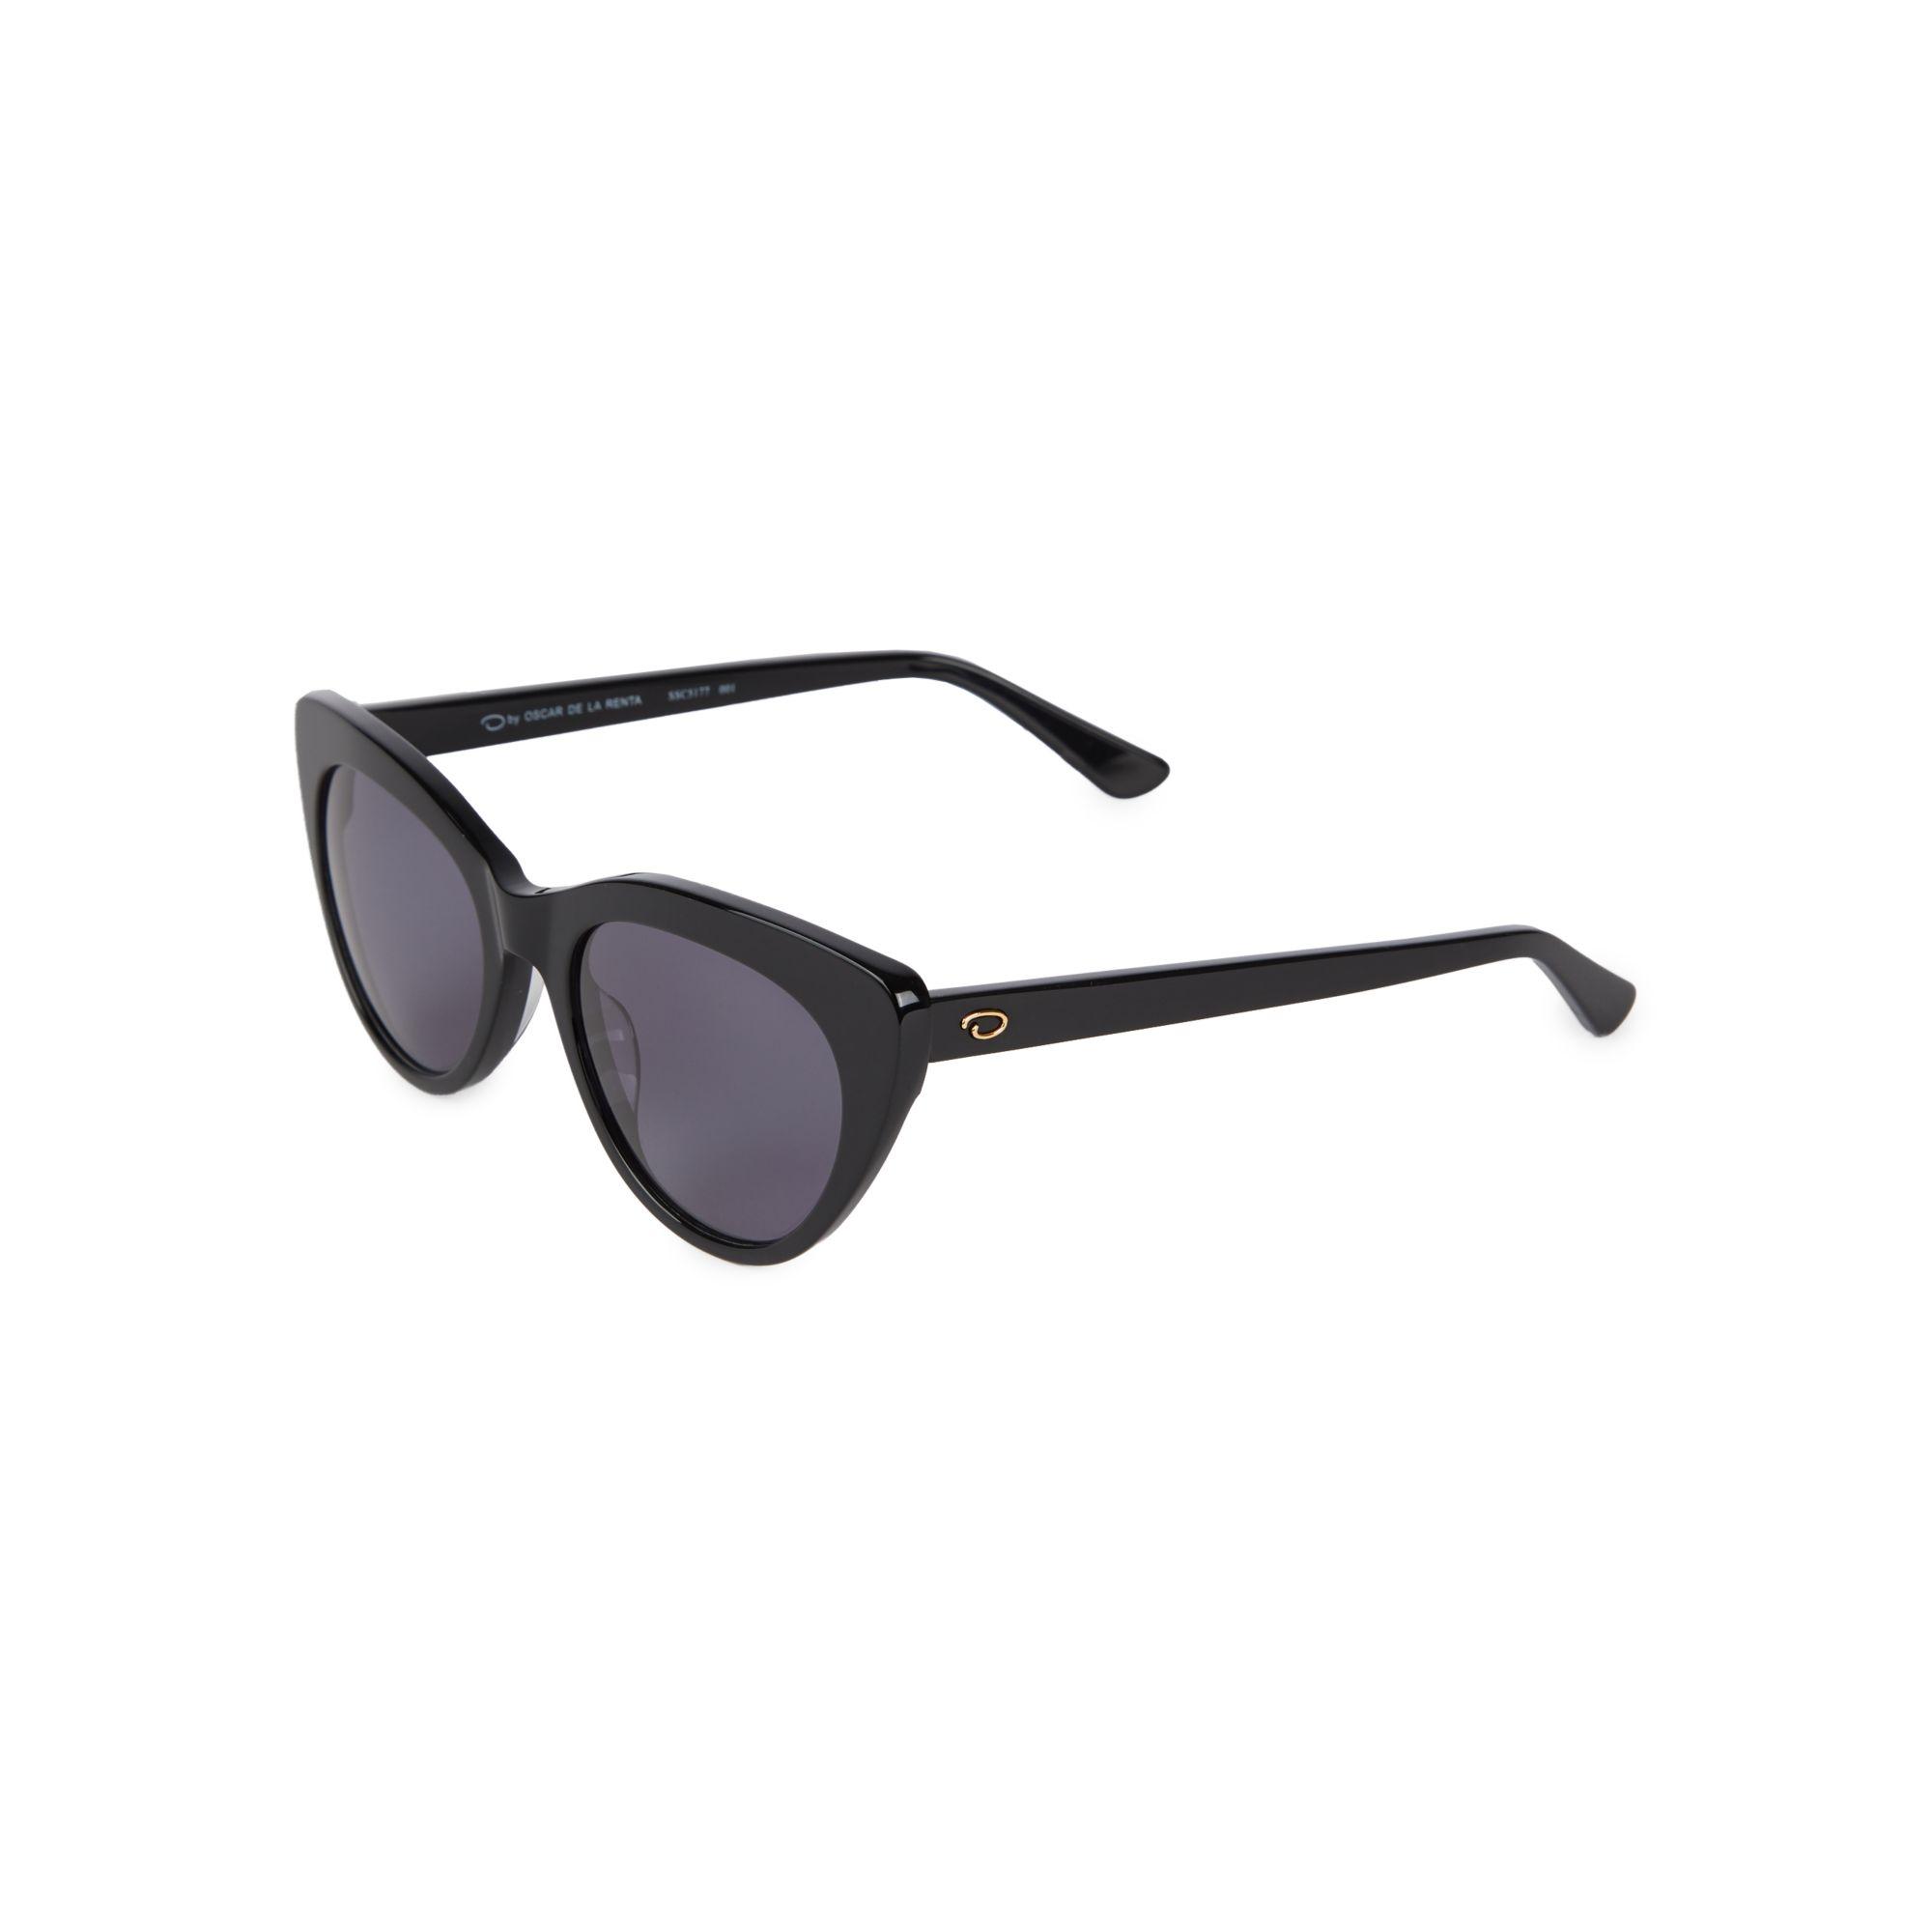 Oscar de la Renta 52mm Cat Eye Sunglasses in Black - Lyst